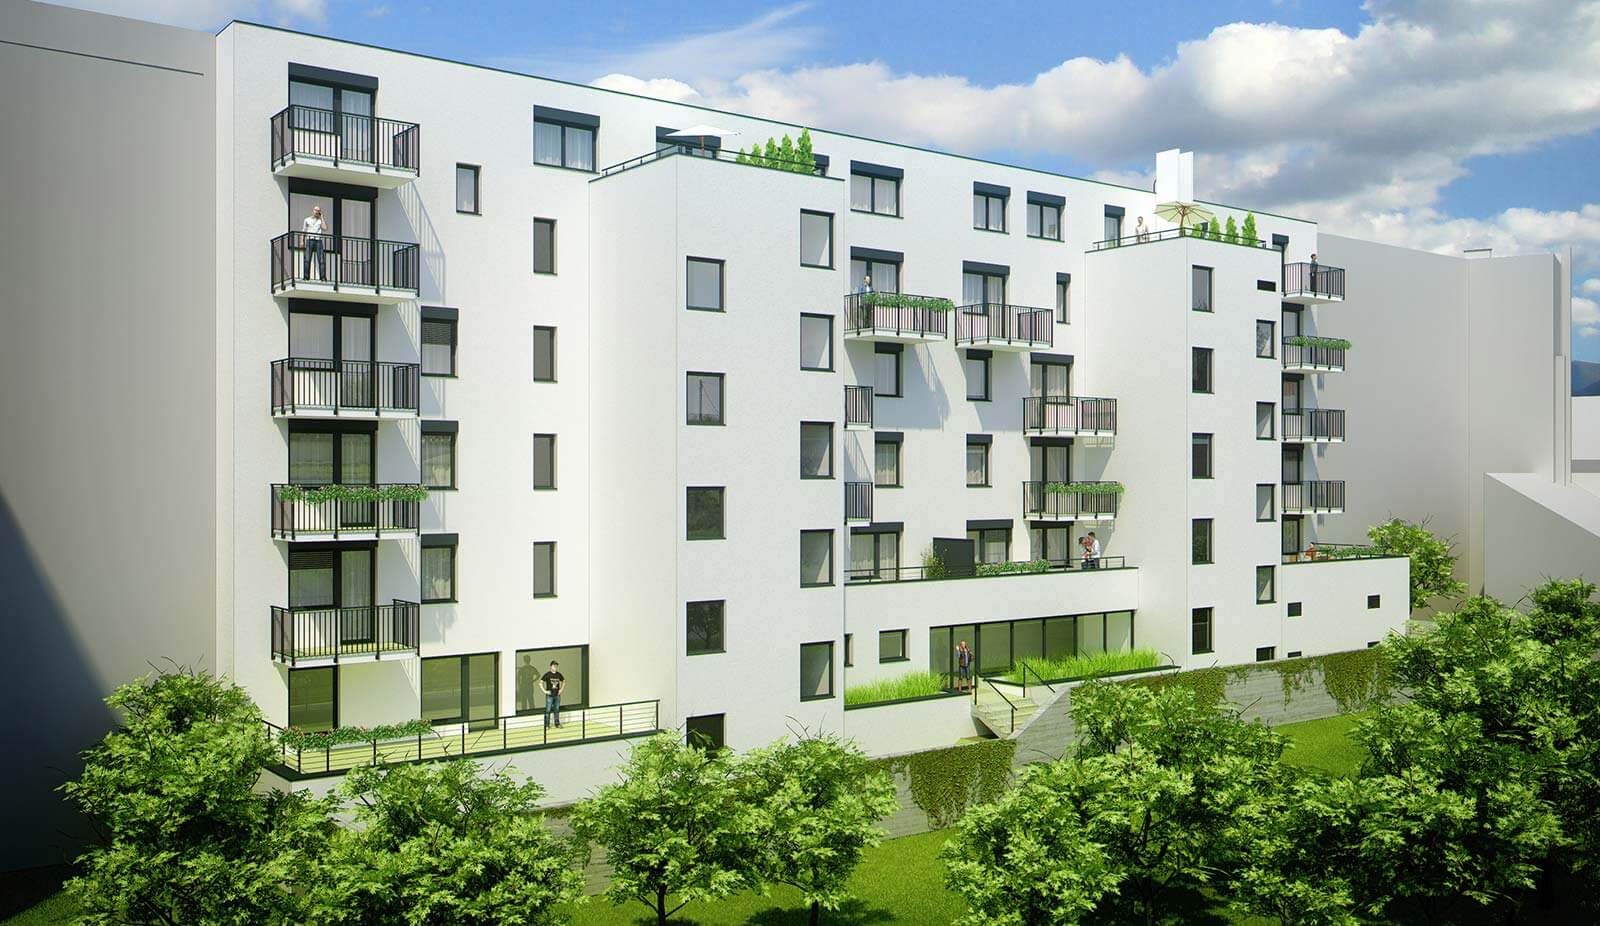 Predané: Novostavba 2 izbový byt, širšie centrum v Bratislave, Beskydská ulica, 56,85m2, štandard.-9